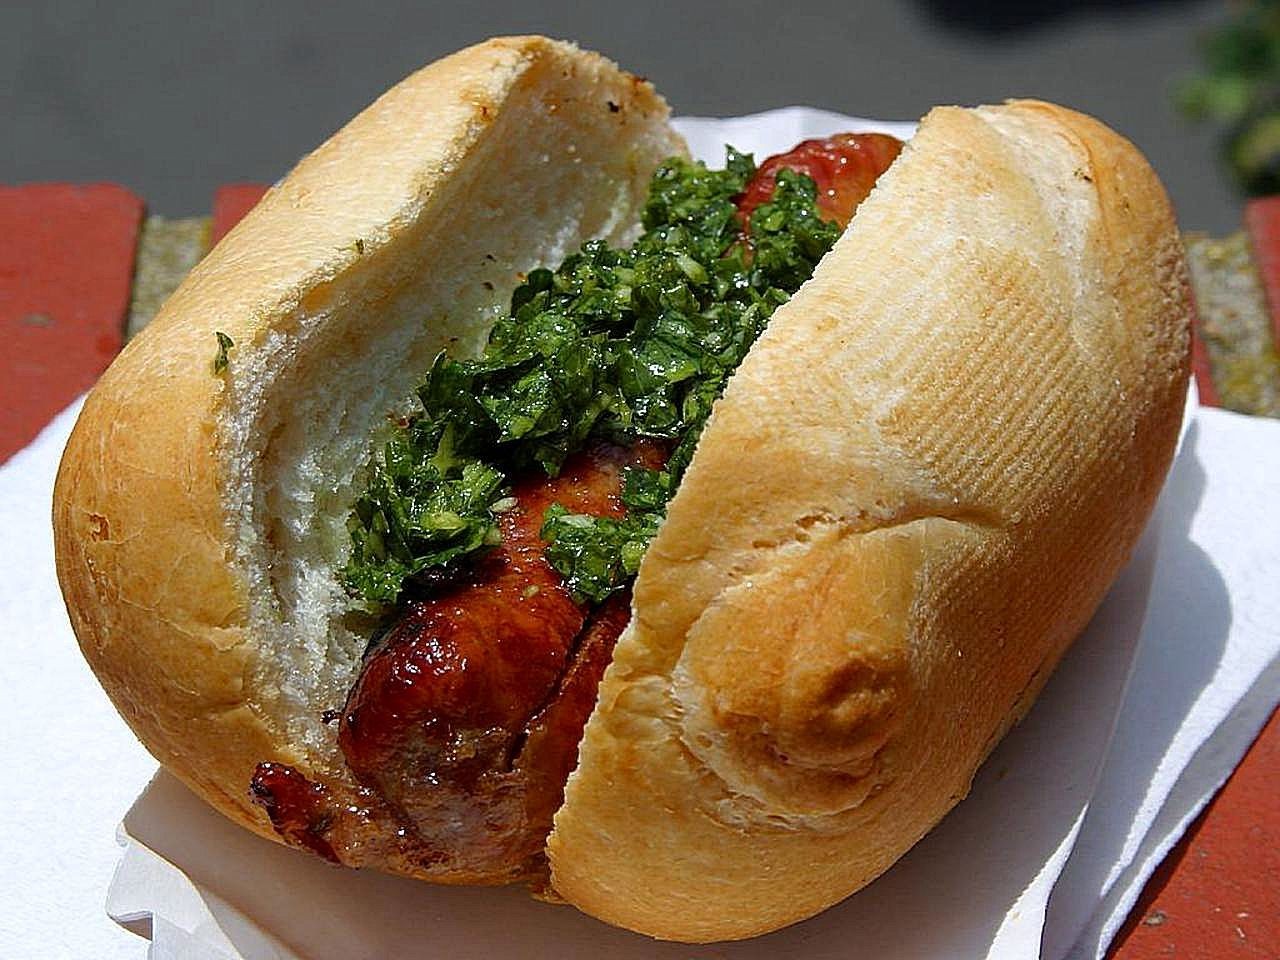 Choripan argentino é eleito melhor hot dog por site de gastronomia; versão brasileira fica em 6º lugar